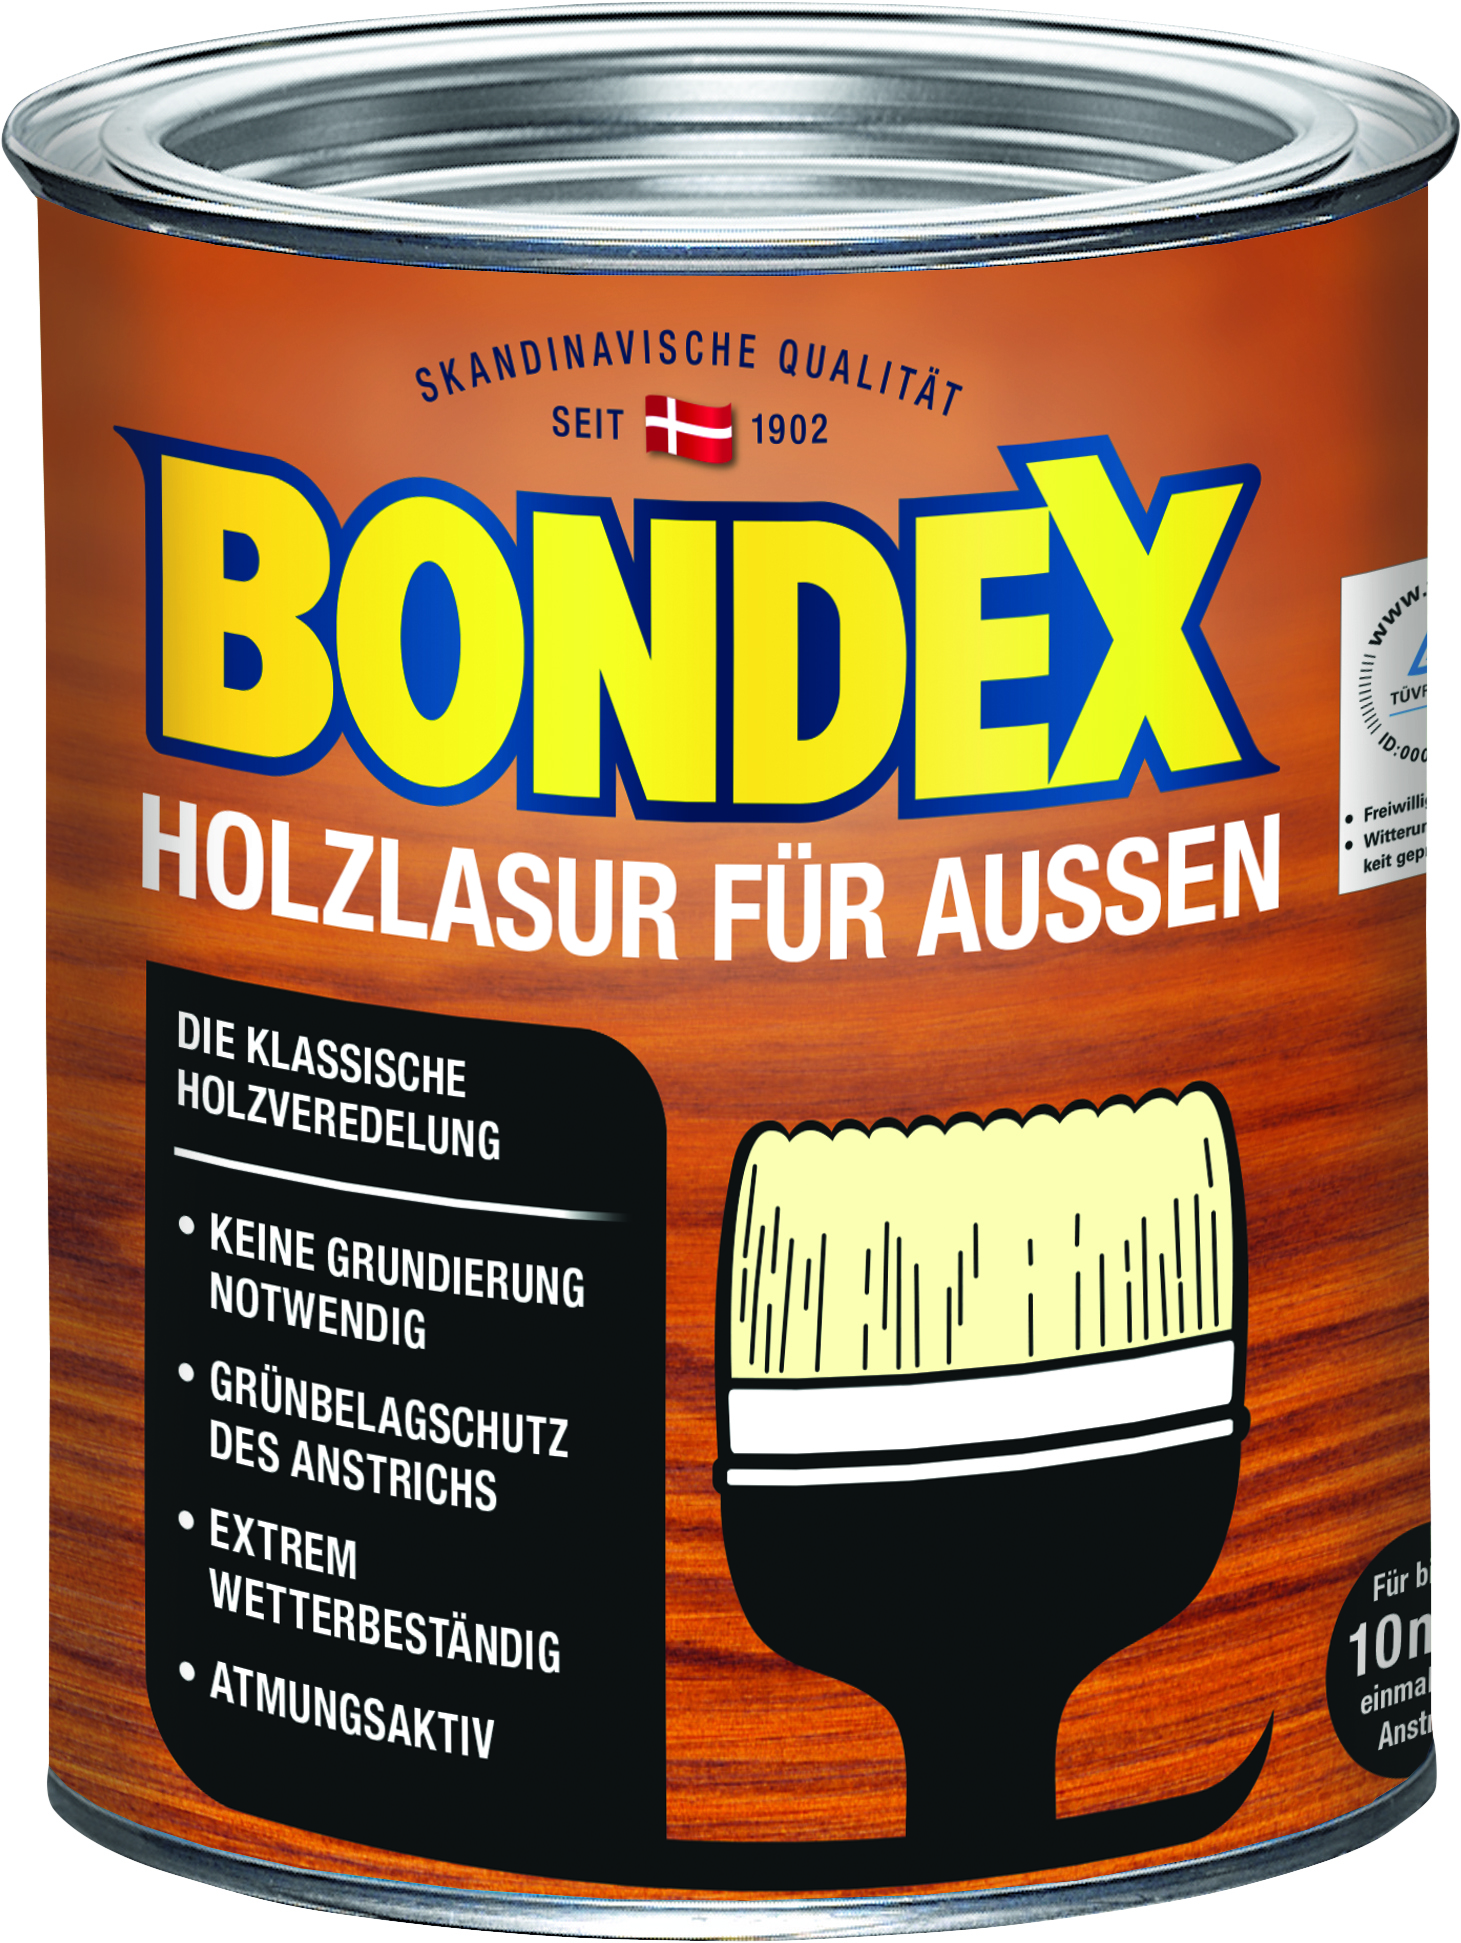 Bondex Holzlasur für Außen Hellgrau, 750ml